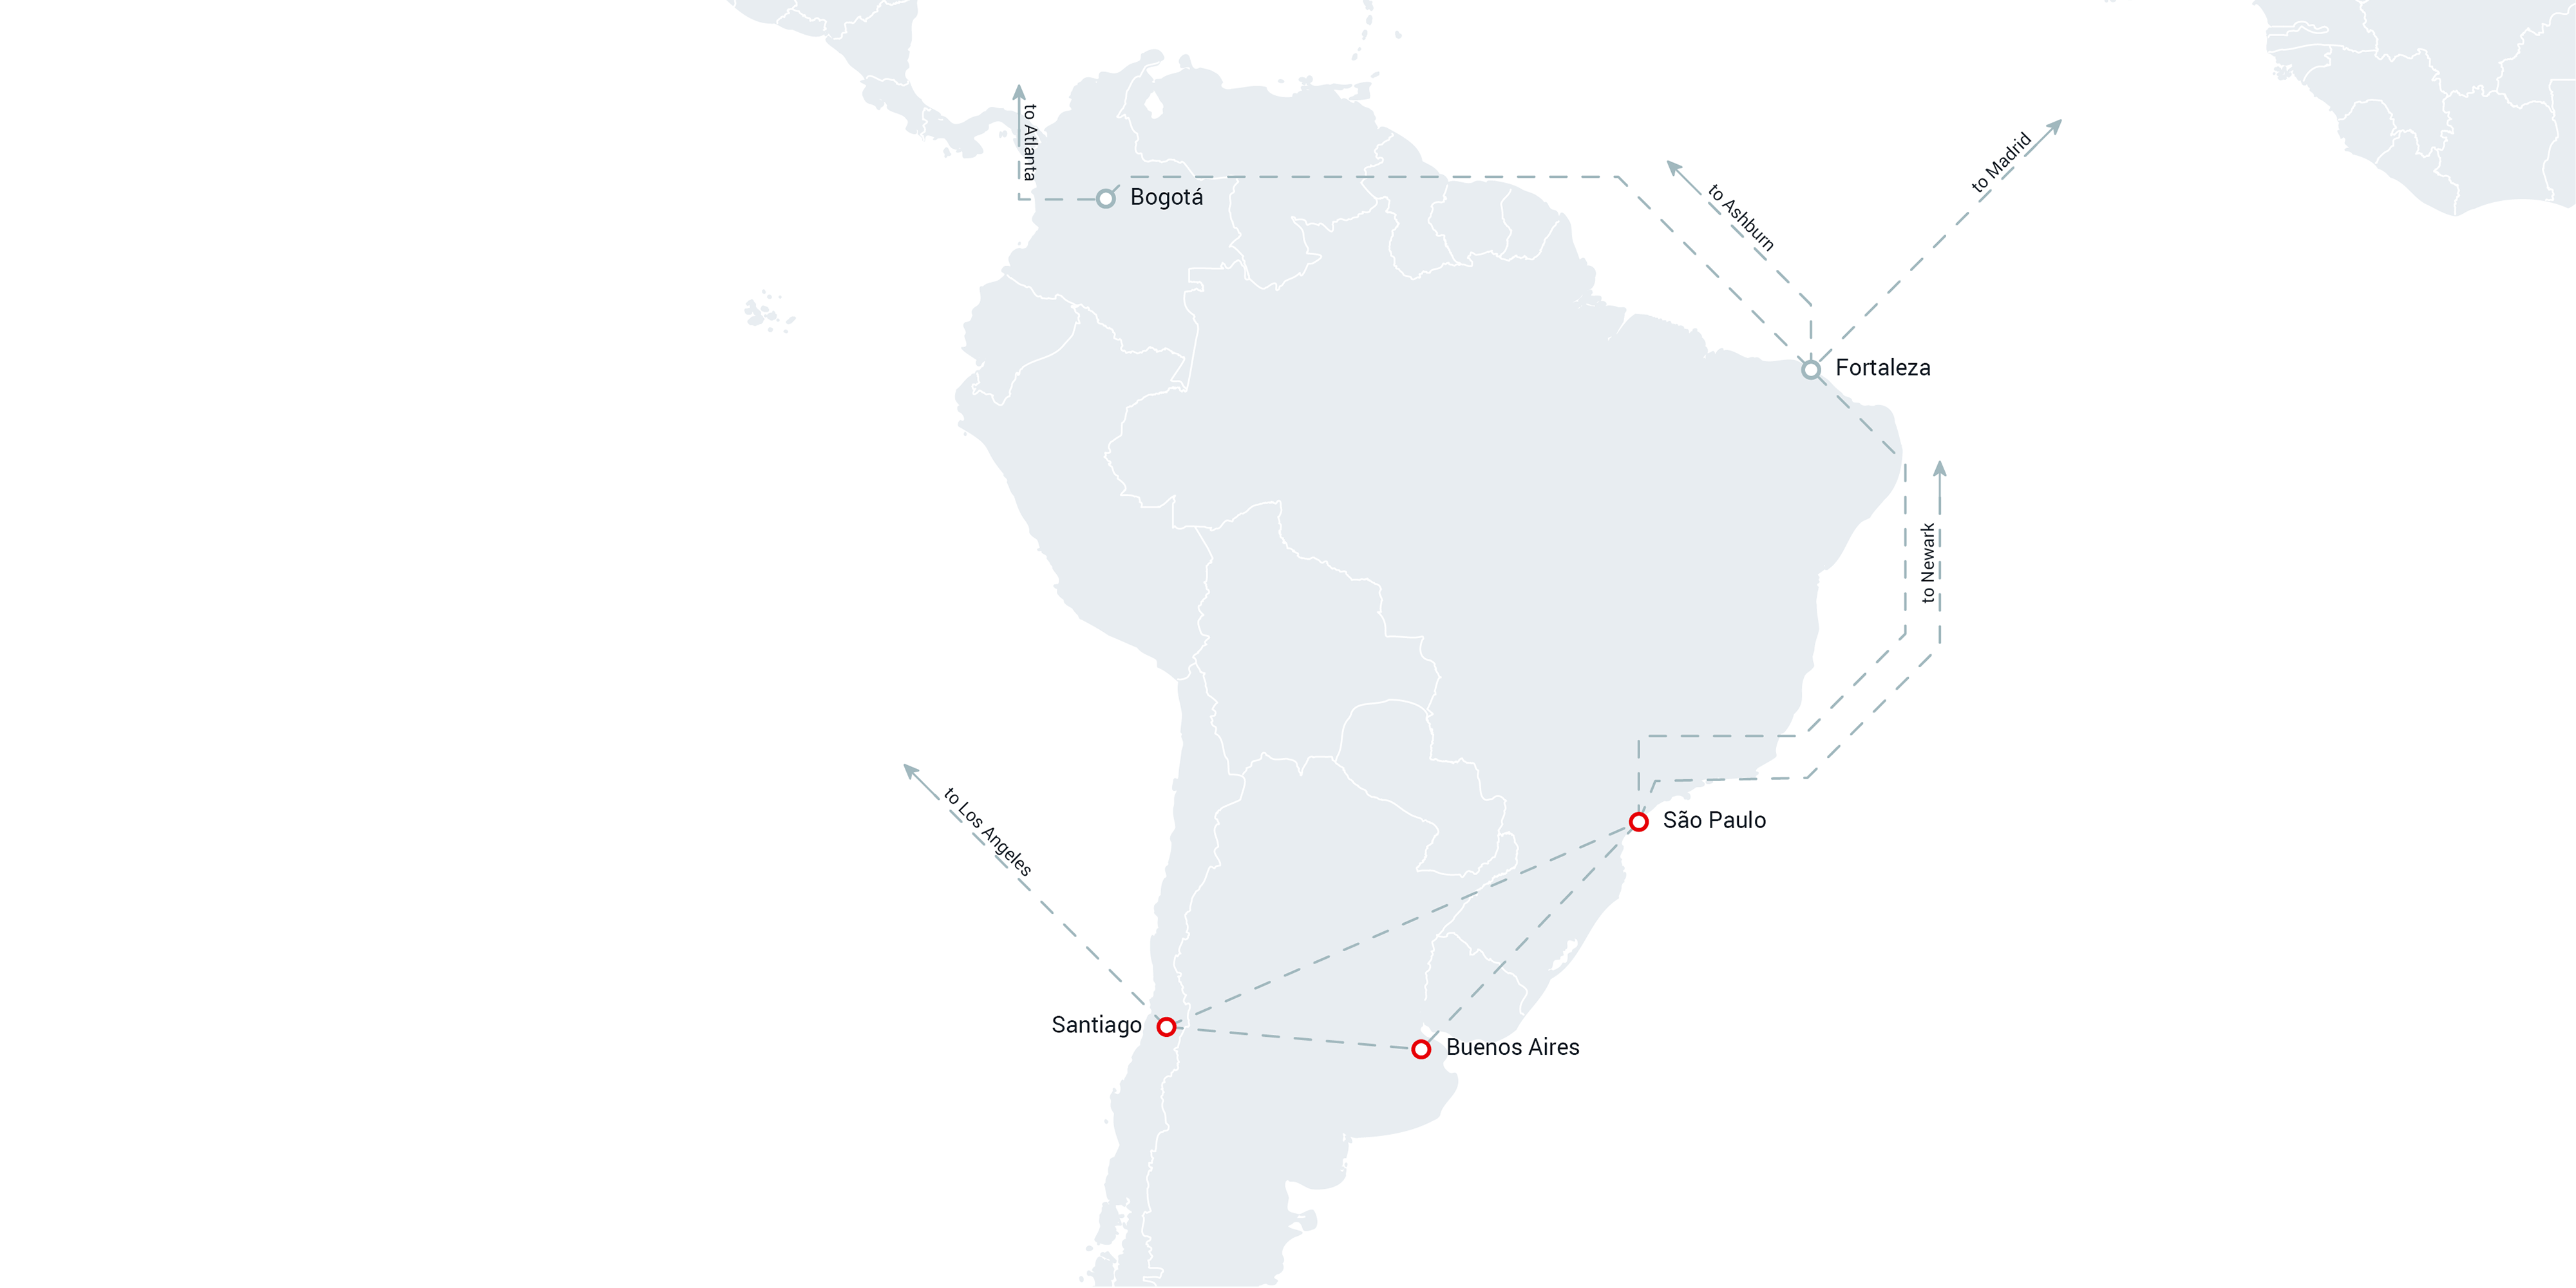 i3D.net's PoP in South America